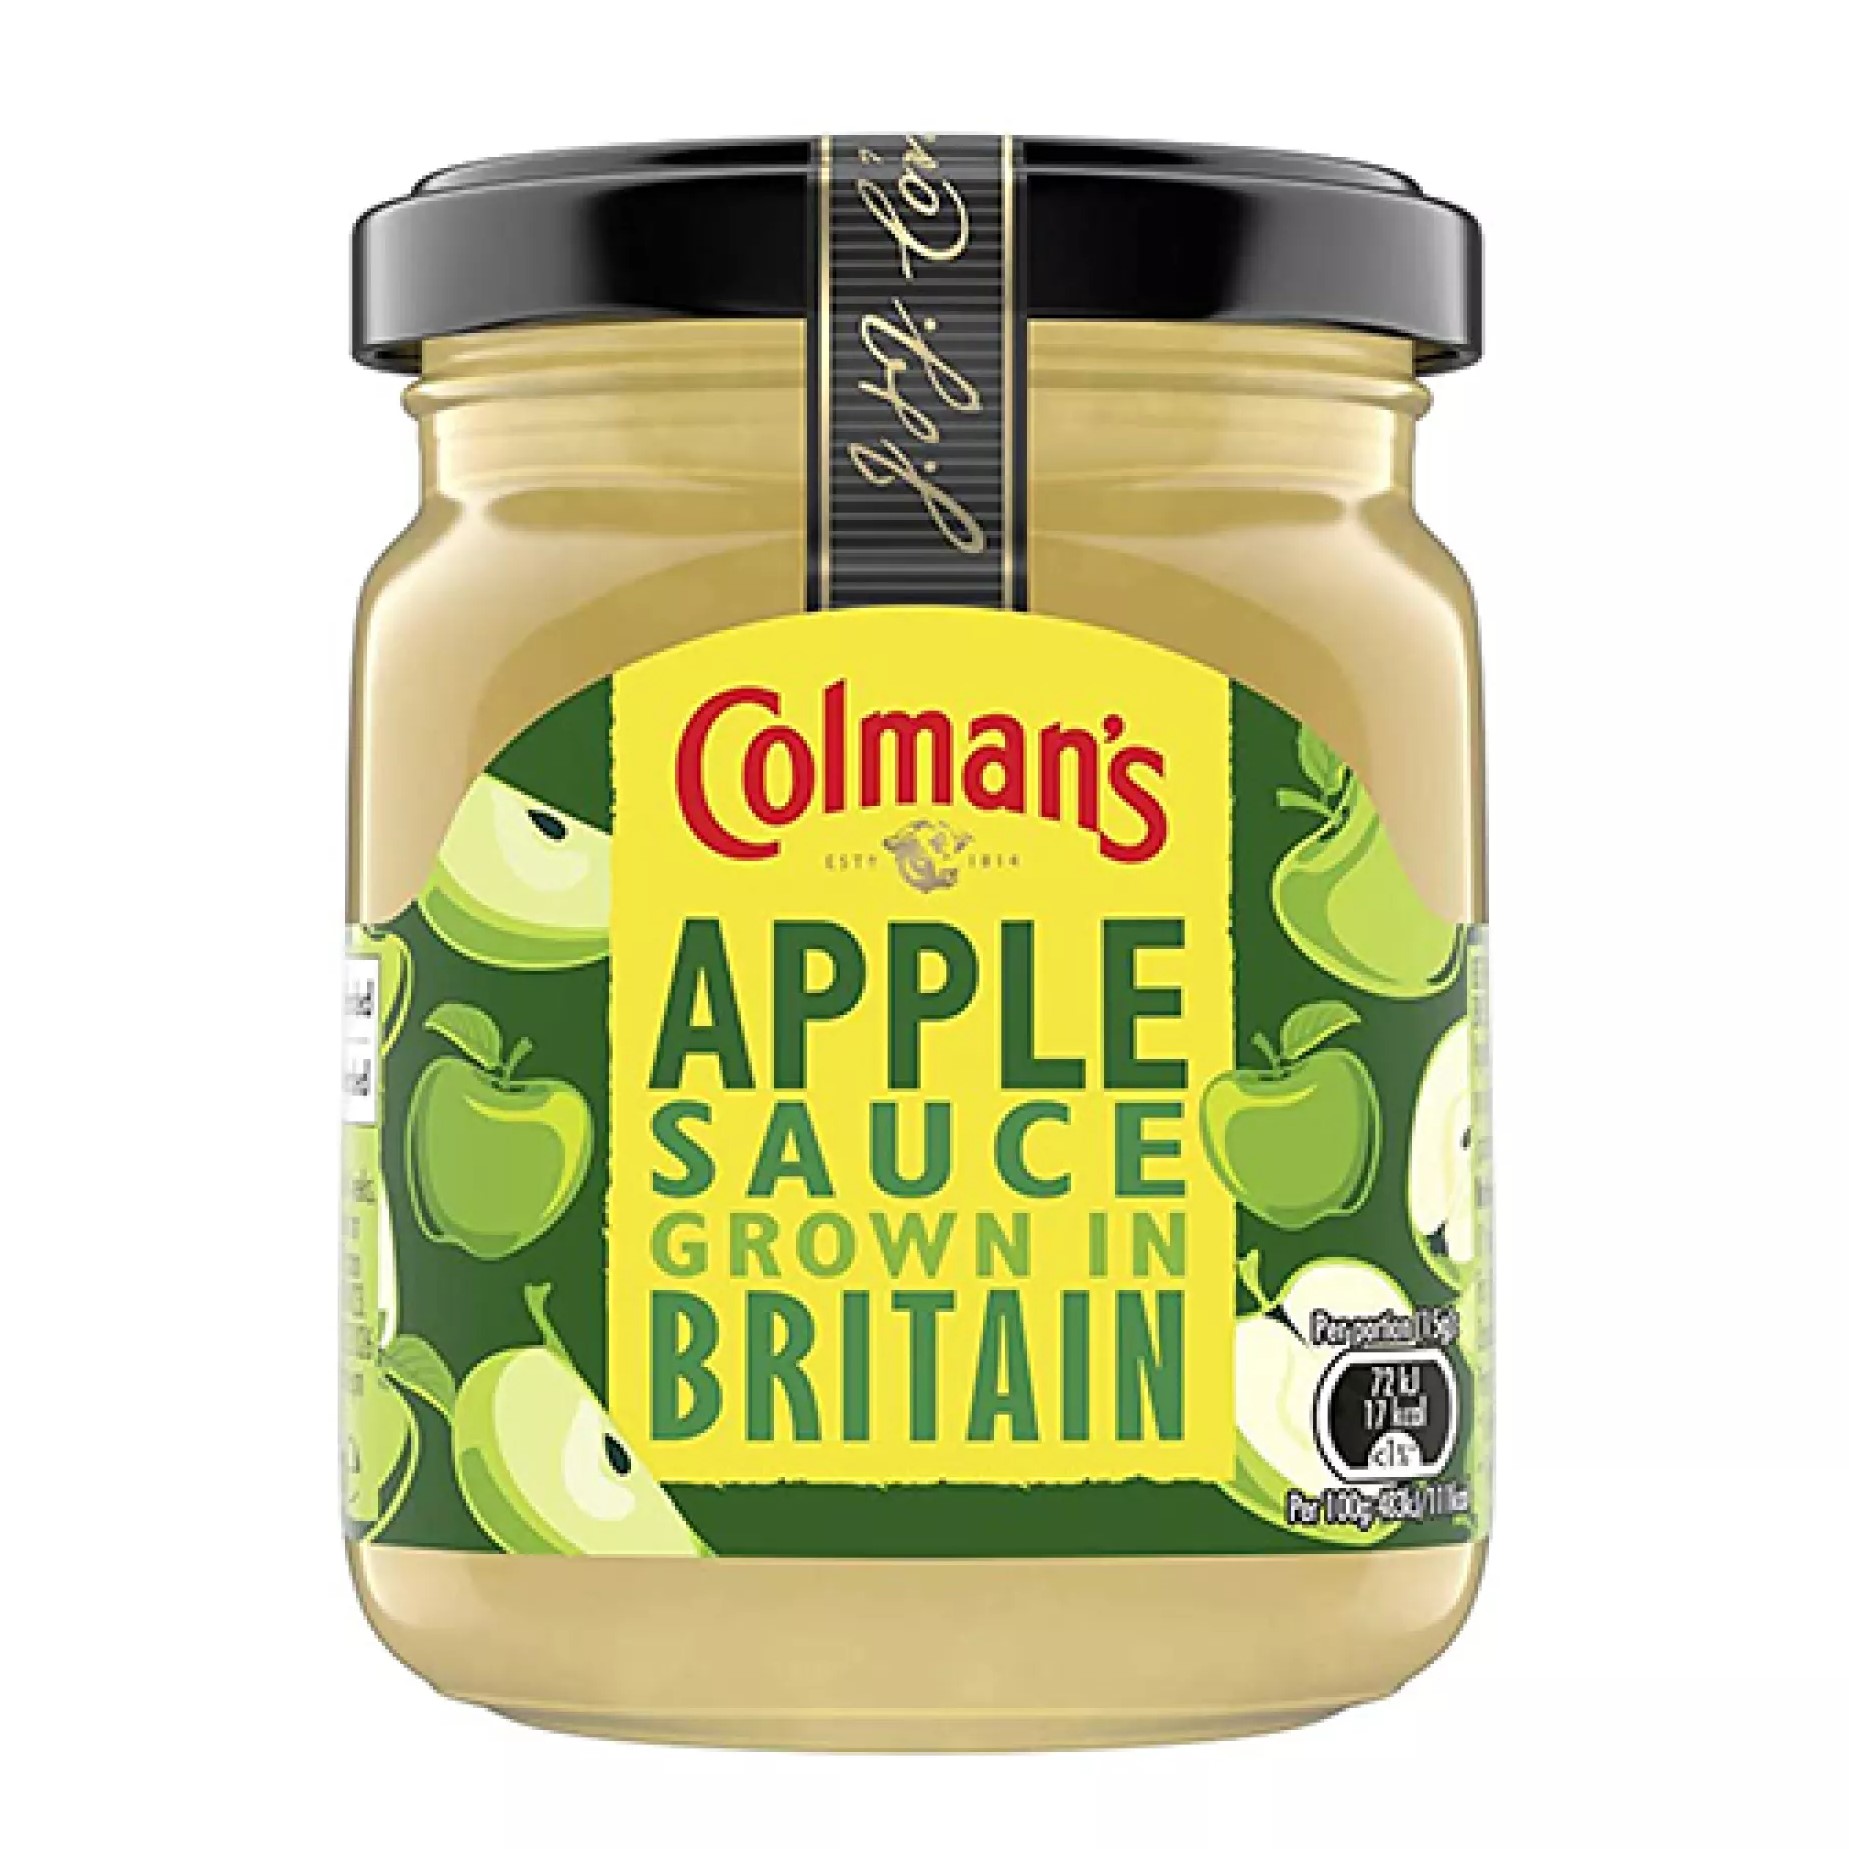 [BBE: 09/21] Colman's Apple Sauce - โคลแมนส์ แอปเปิ้ล ซอส (155g)